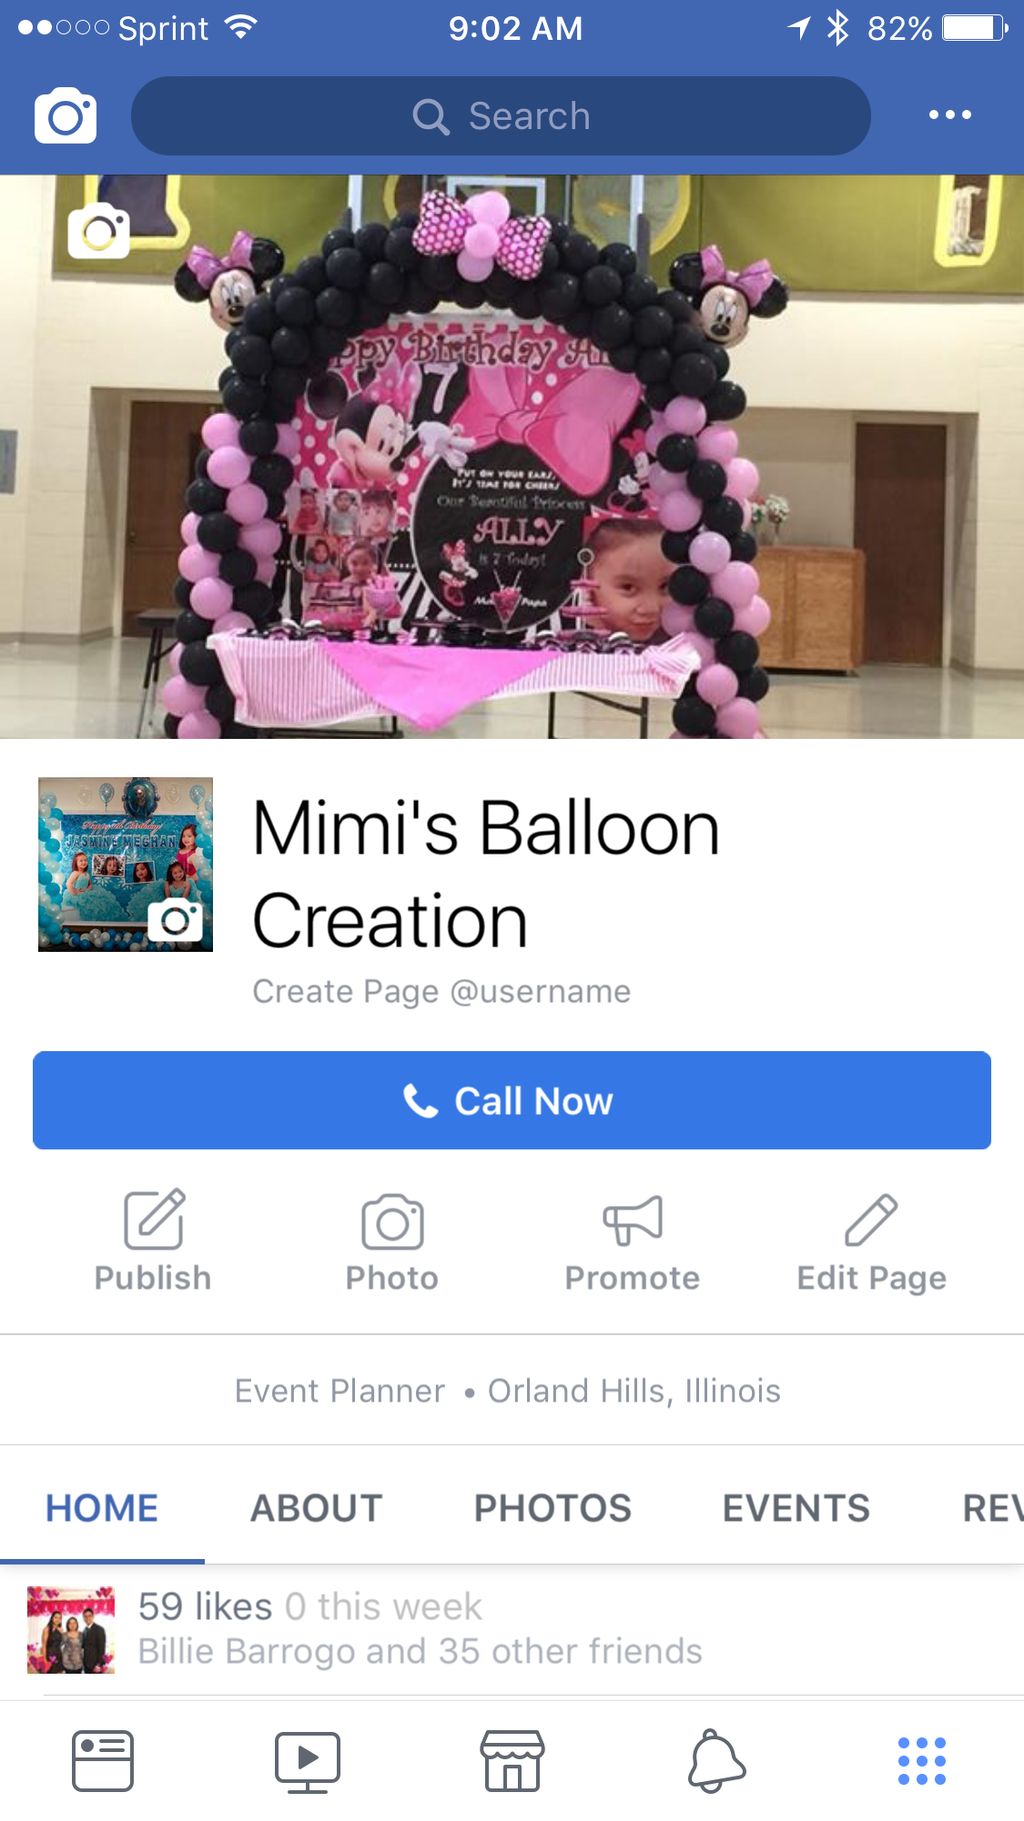 Mimi's Balloon Creation